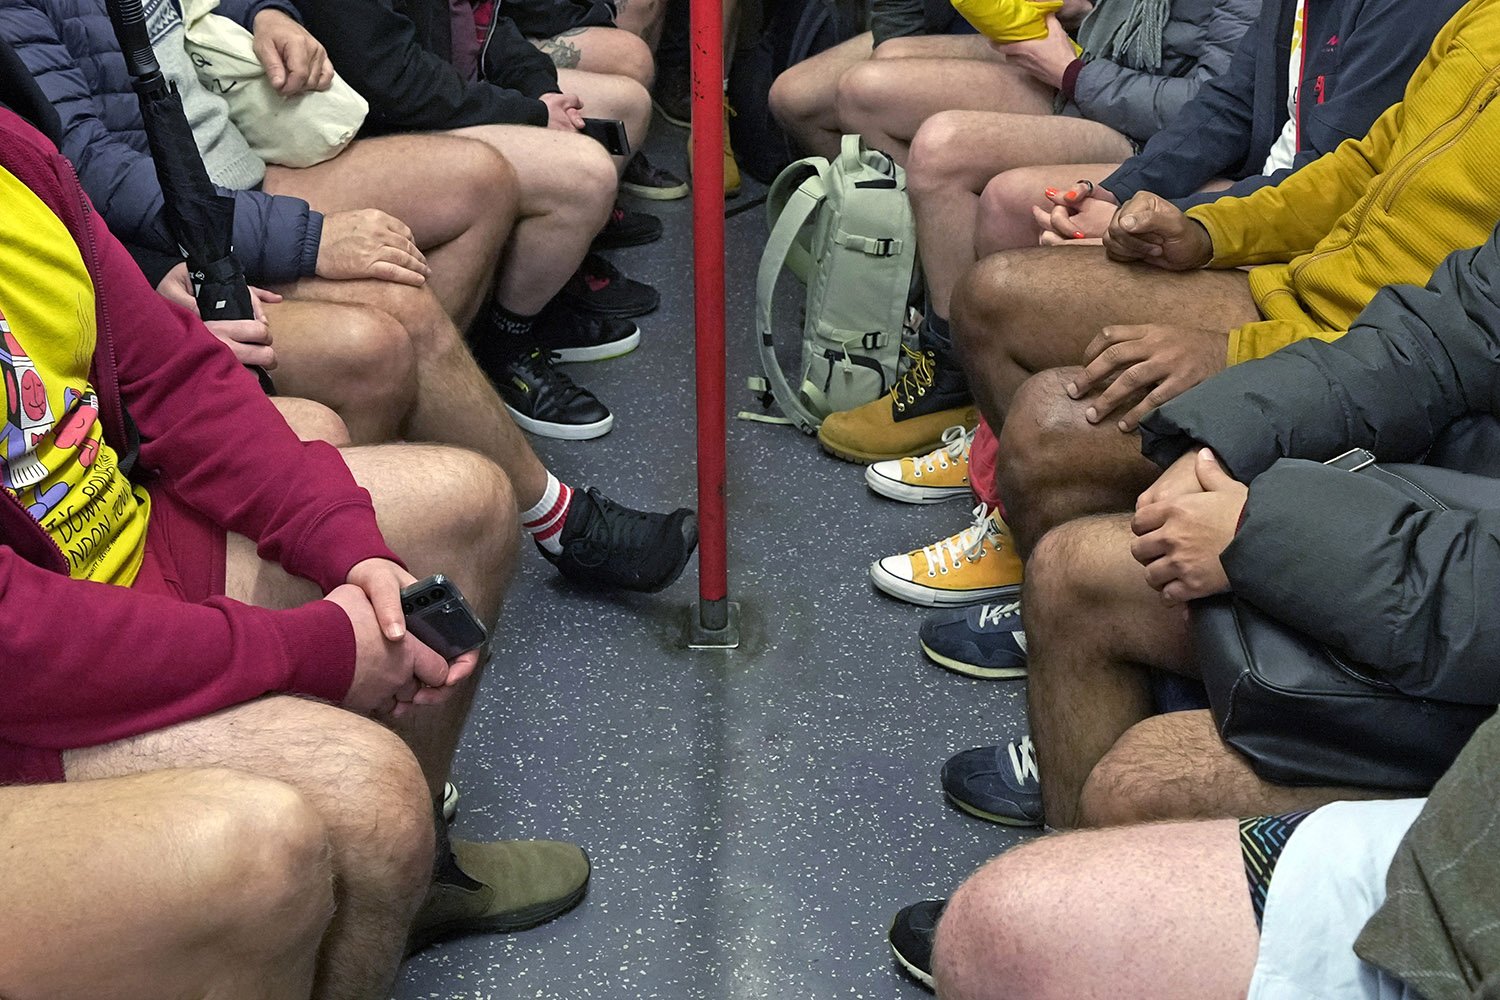 8일 영국 런던에서 열린 바지 벗고 지하철 타기에 참가한 승객들이 지하철에 탑승해 마주 앉아 있다. AP=연합뉴스